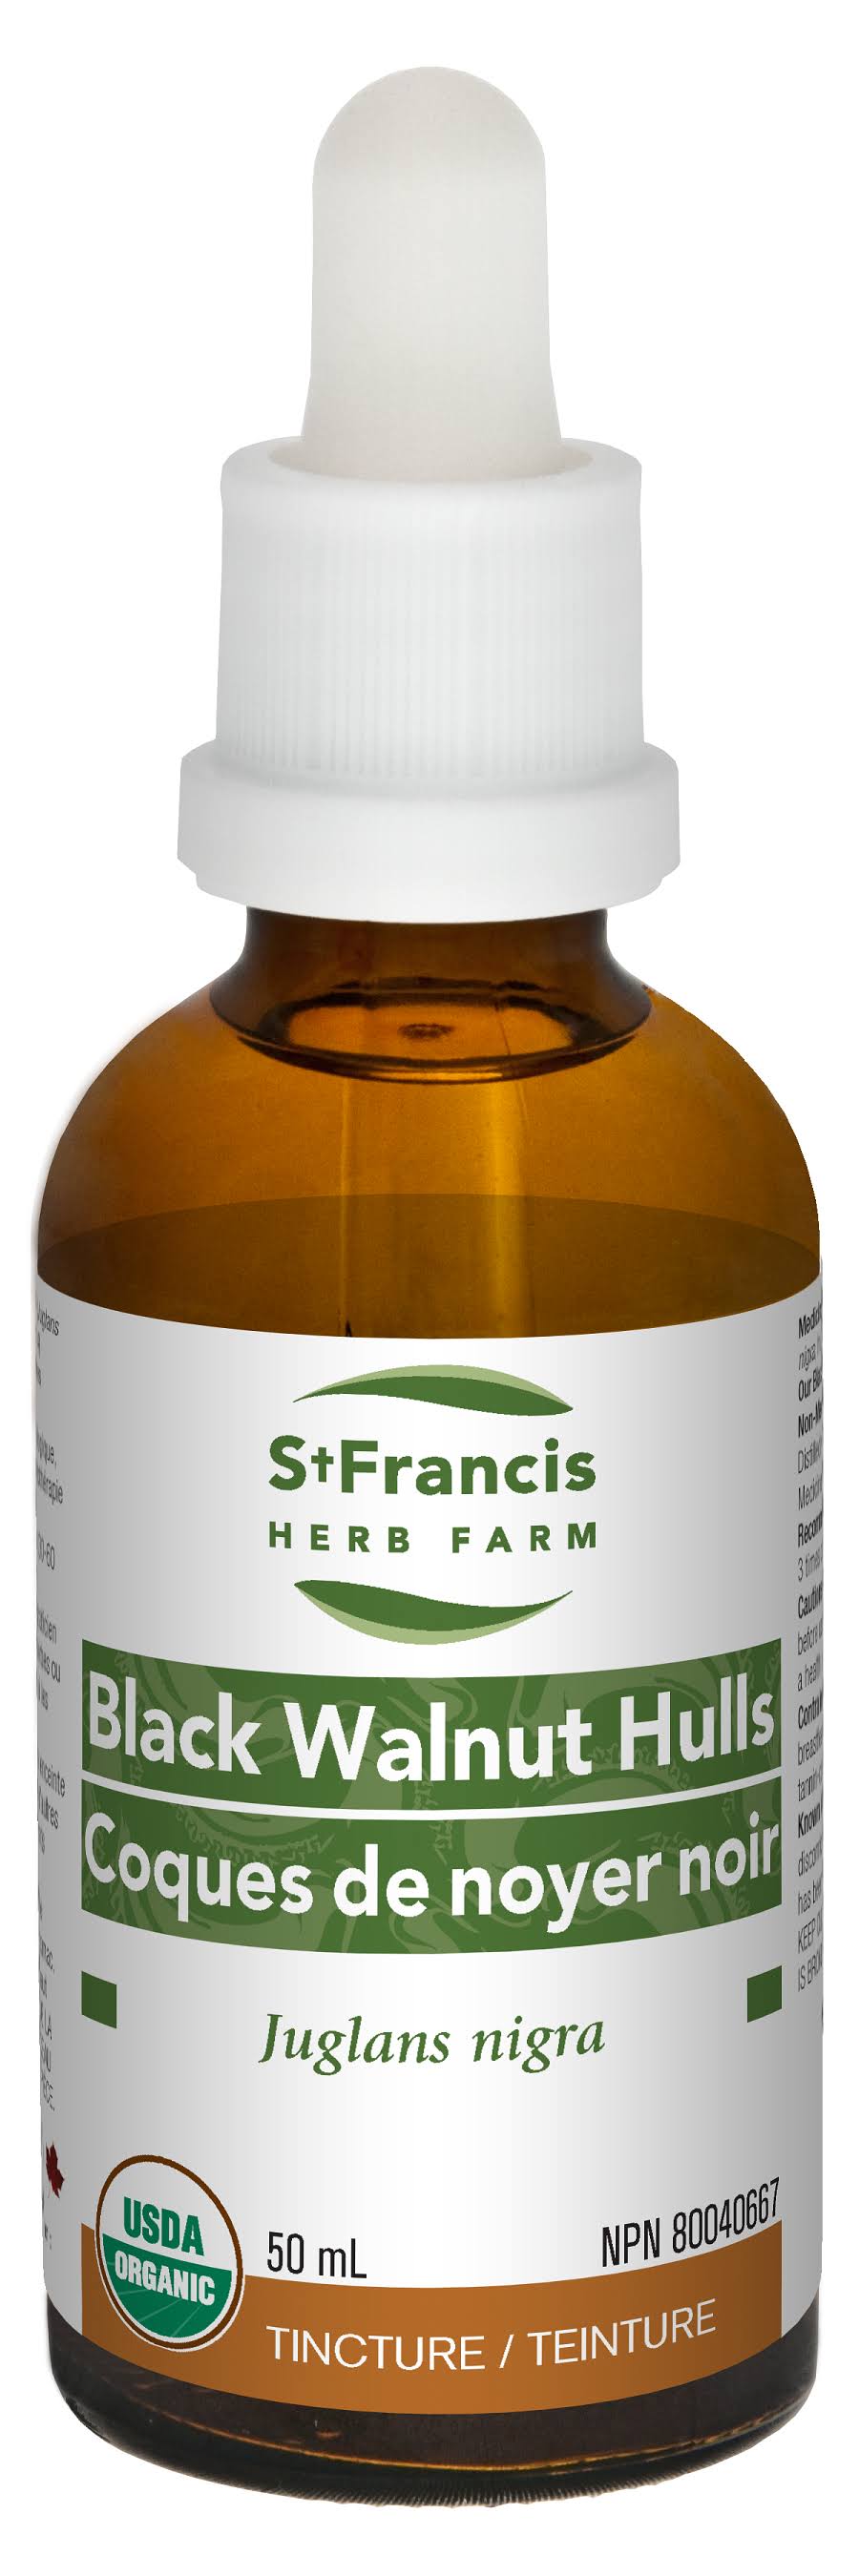 St Francis Herb Farm Black Walnut Hulls Tincture - 50ml